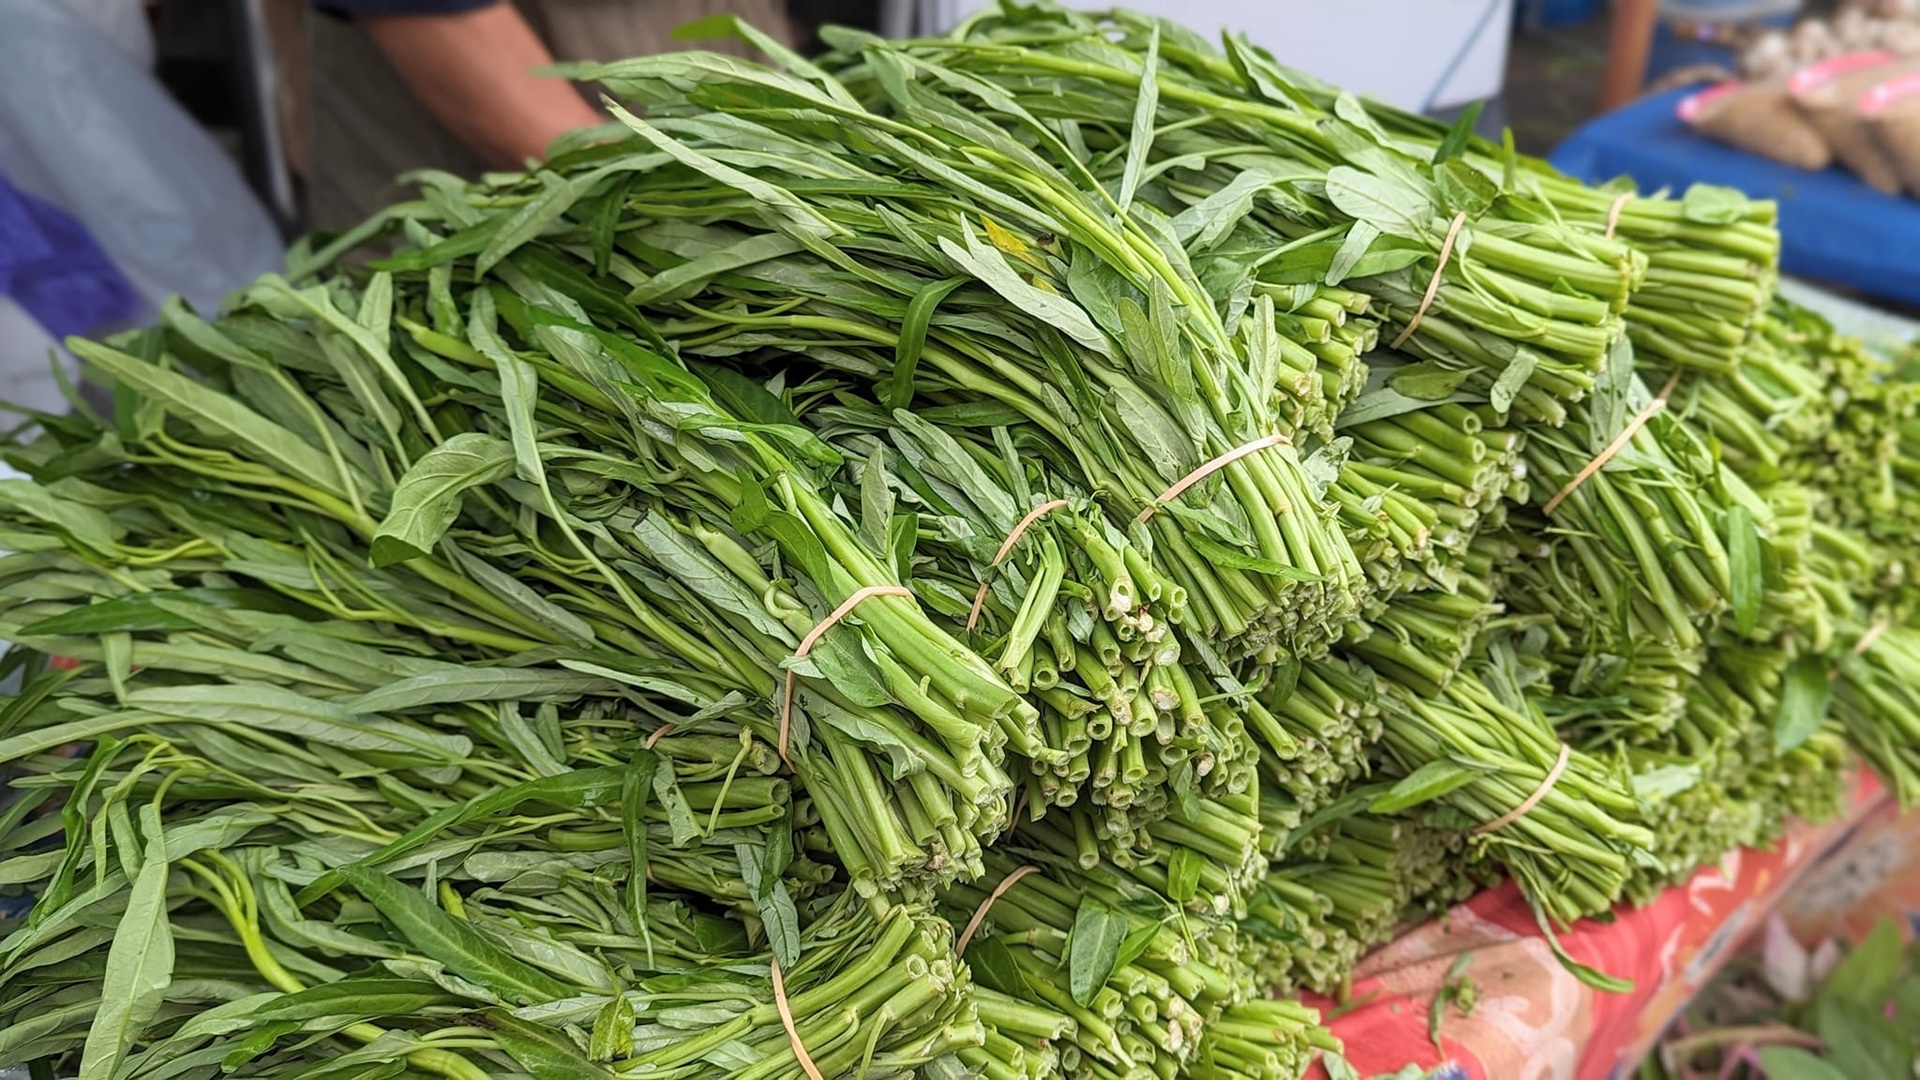 Châu Âu đắt đỏ, mẹ Việt trổ tài nấu cơm chưa đến 200.000 đồng cho 3 người - 5